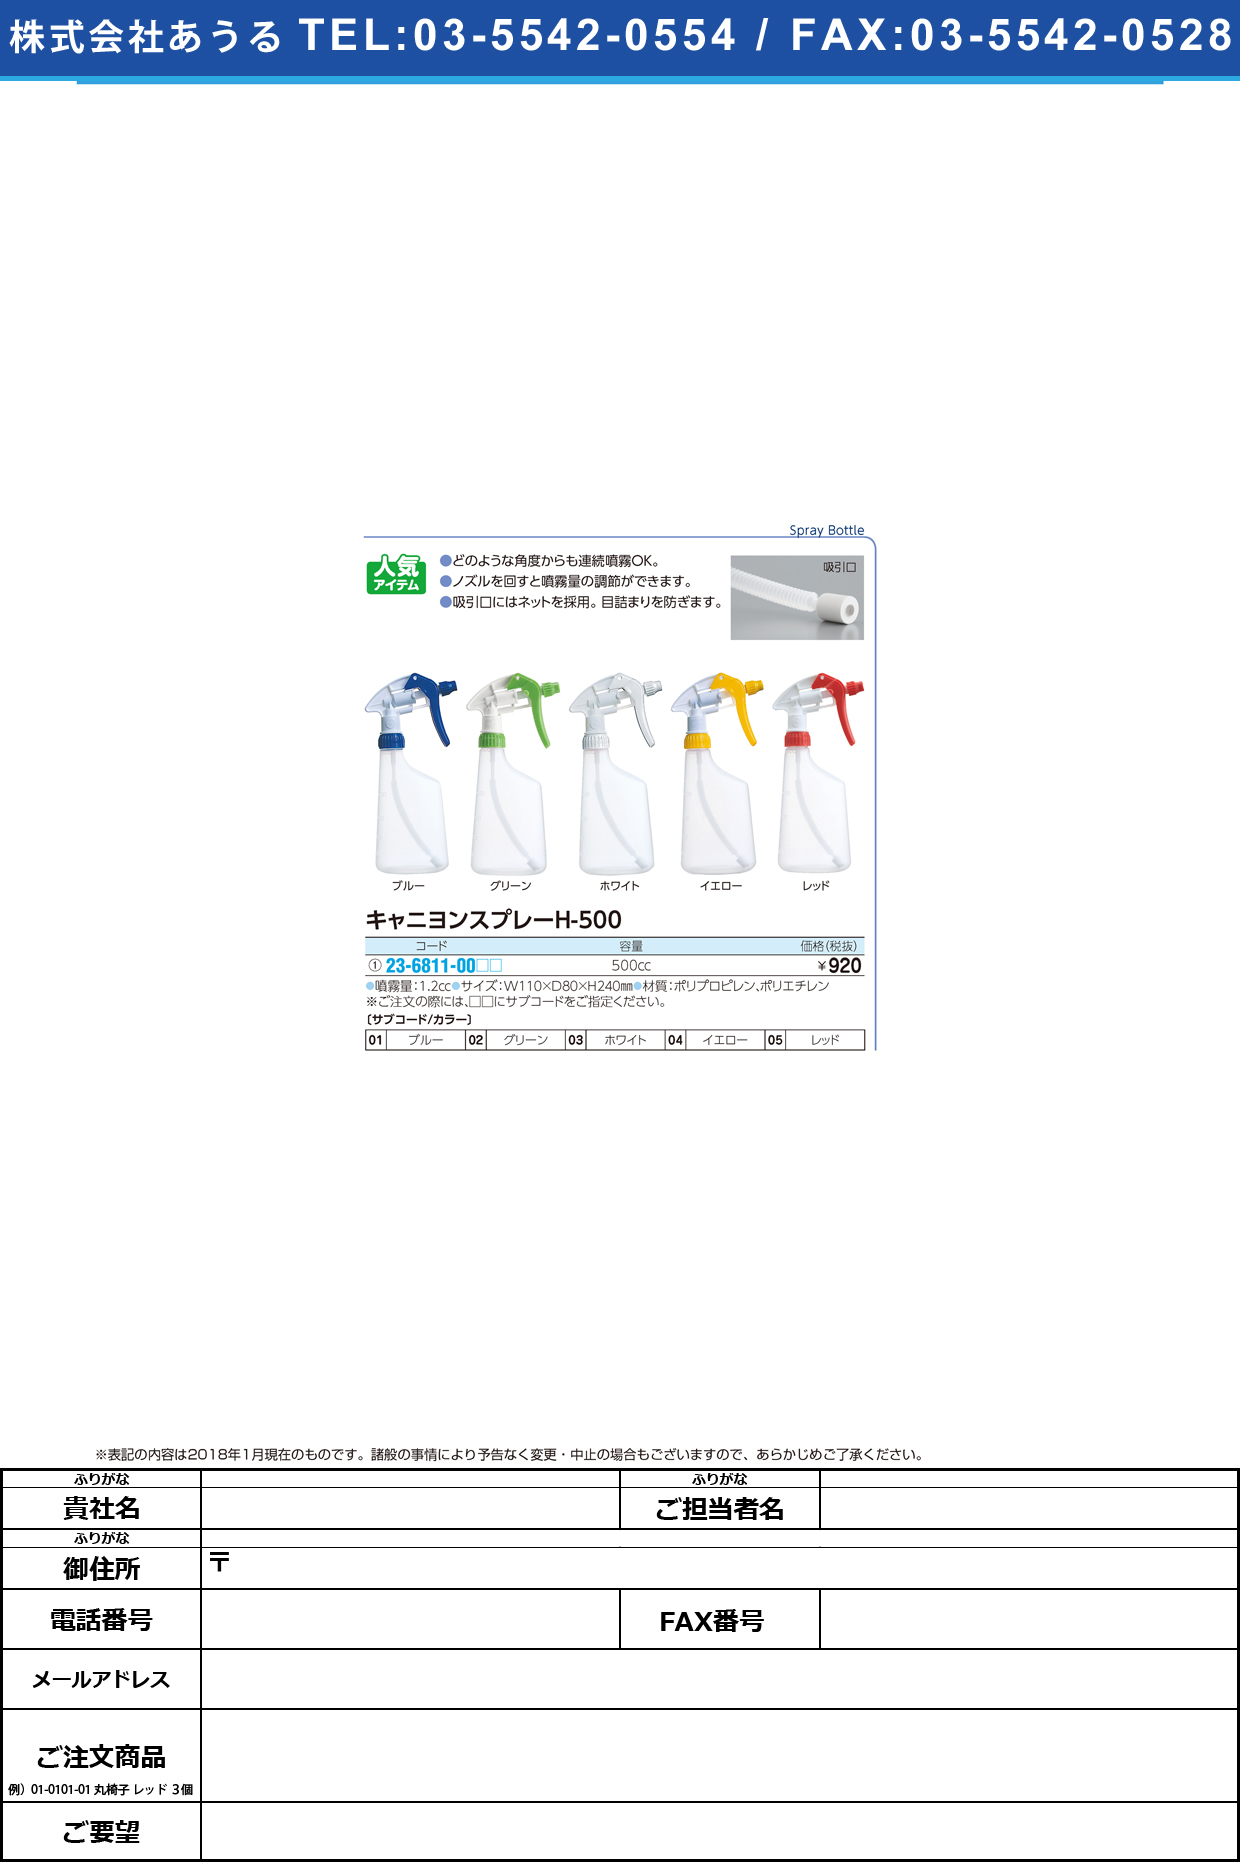 (23-6811-00)キャニヨンスプレー H-500(500CC) ｷｬﾆﾖﾝｽﾌﾟﾚｰ イエロー(山崎産業)【1個単位】【2019年カタログ商品】